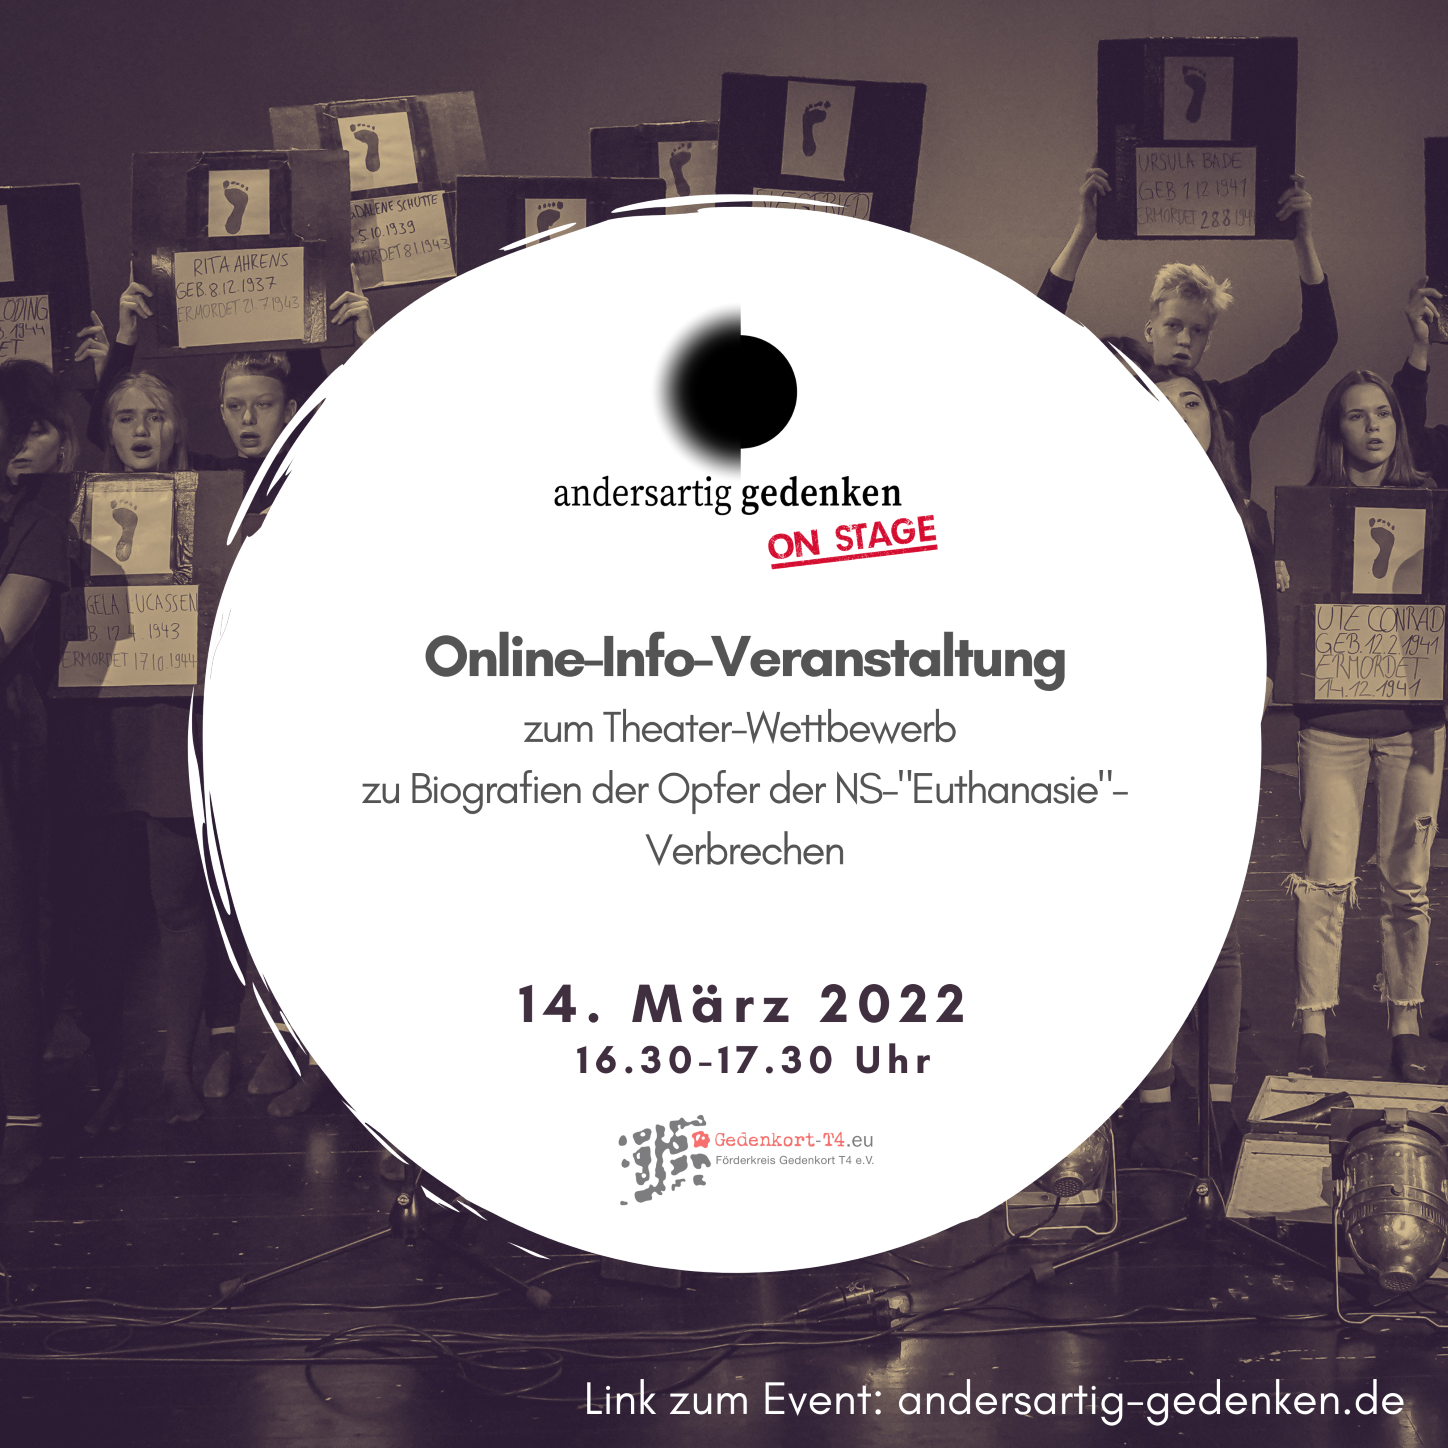 Online-Info-Veranstaltung zum Theaterwettbewerb andersartig gedenken on stage, am 14.03.2022 um 16.30 Uhr, Text auf Bild mit Bühne und Schüler*innen